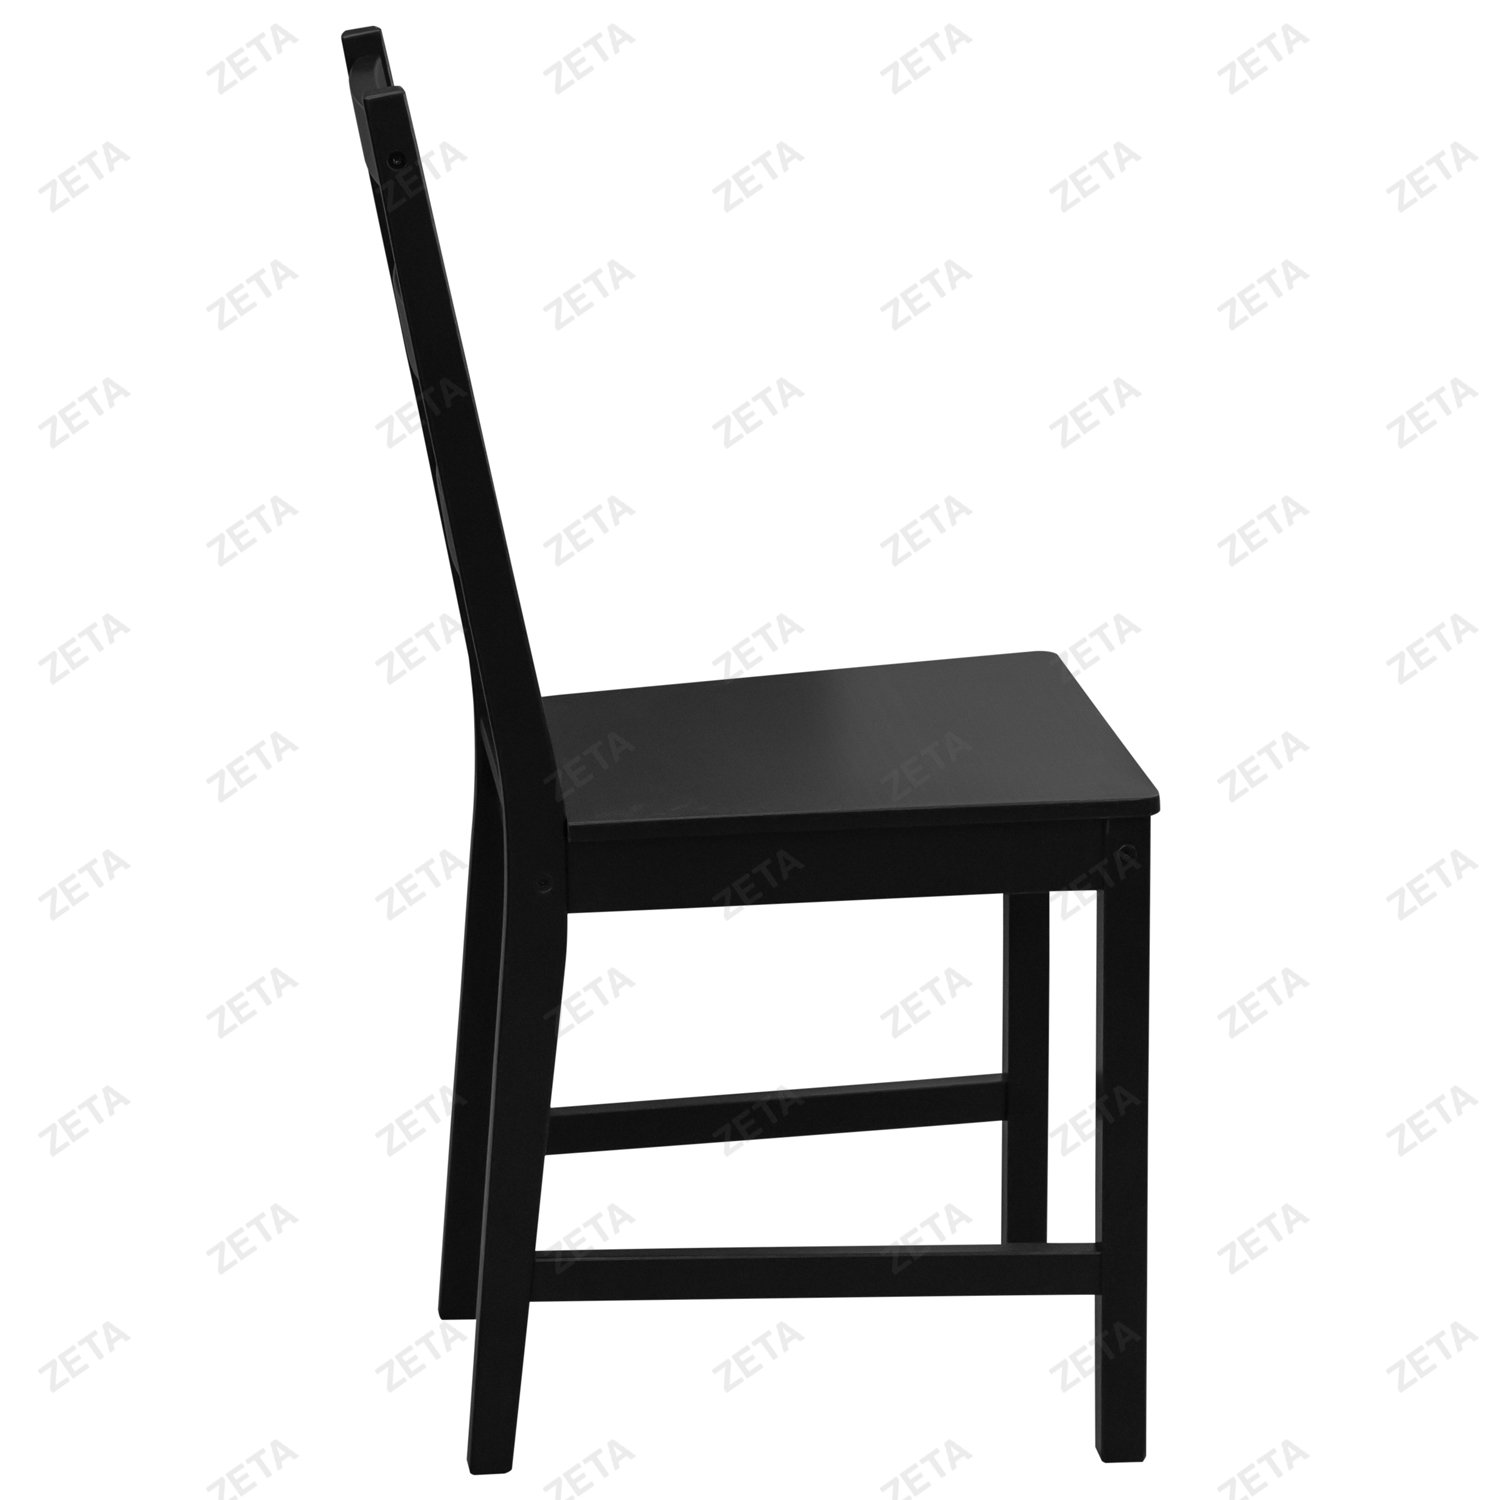 Столовый комплект от производителей IKEA: стол + 4 стула "Ladder Back" (чёрный) (ВИ) - изображение 7